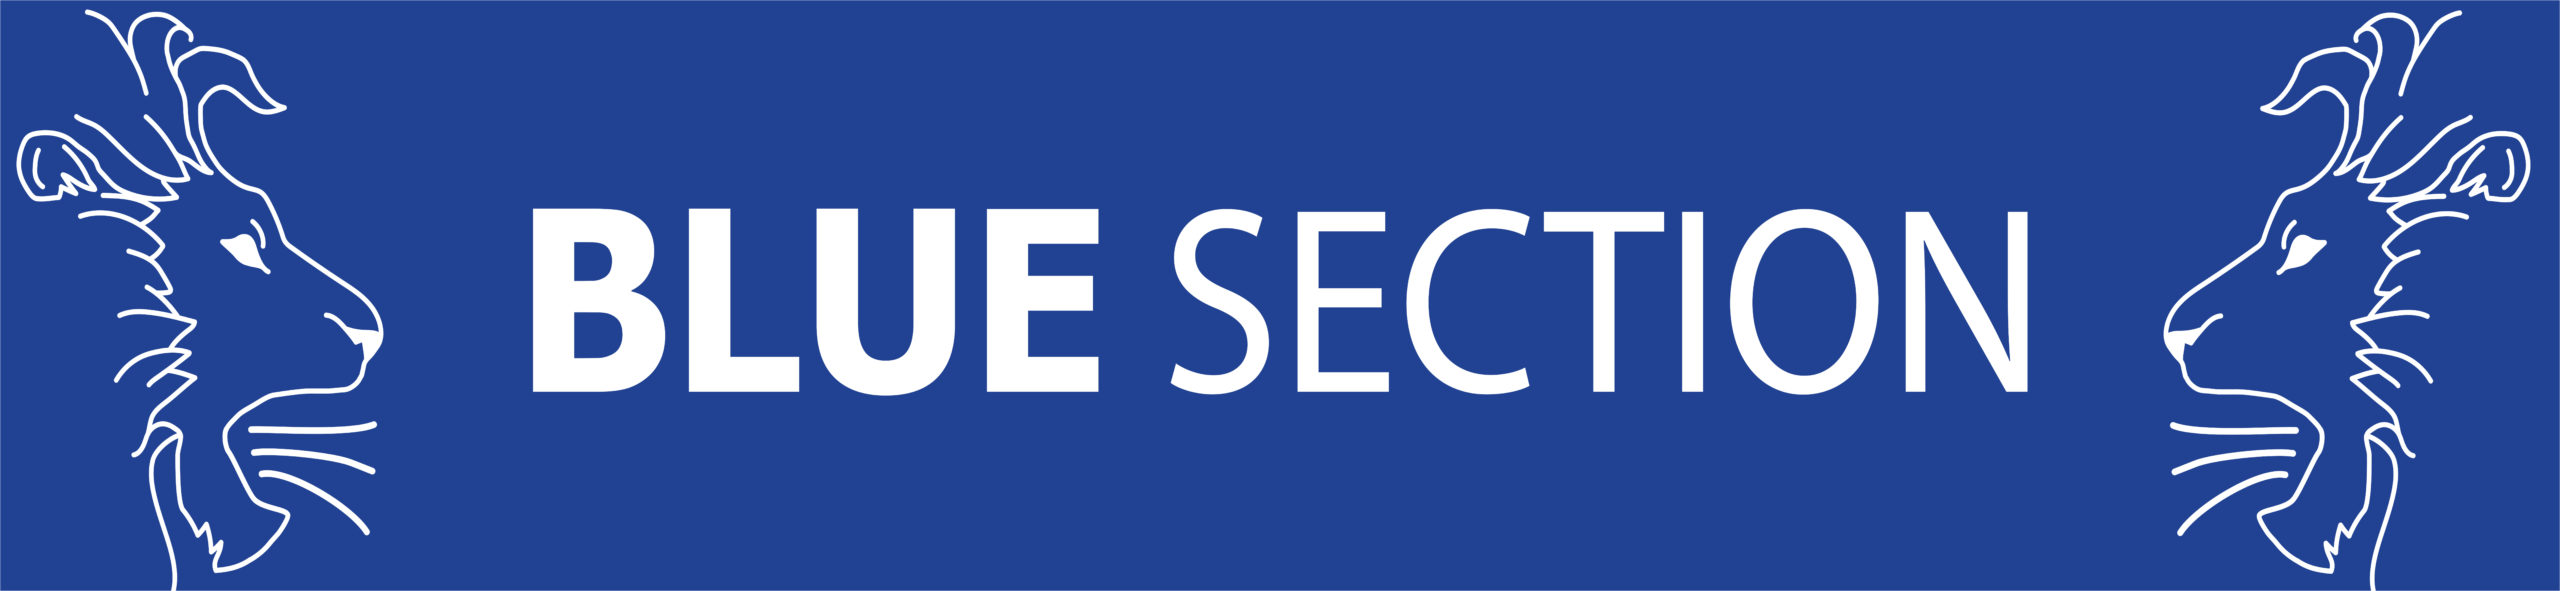 Afgørende fase af sæsonen 2019/20 med nyt Blue Section banner